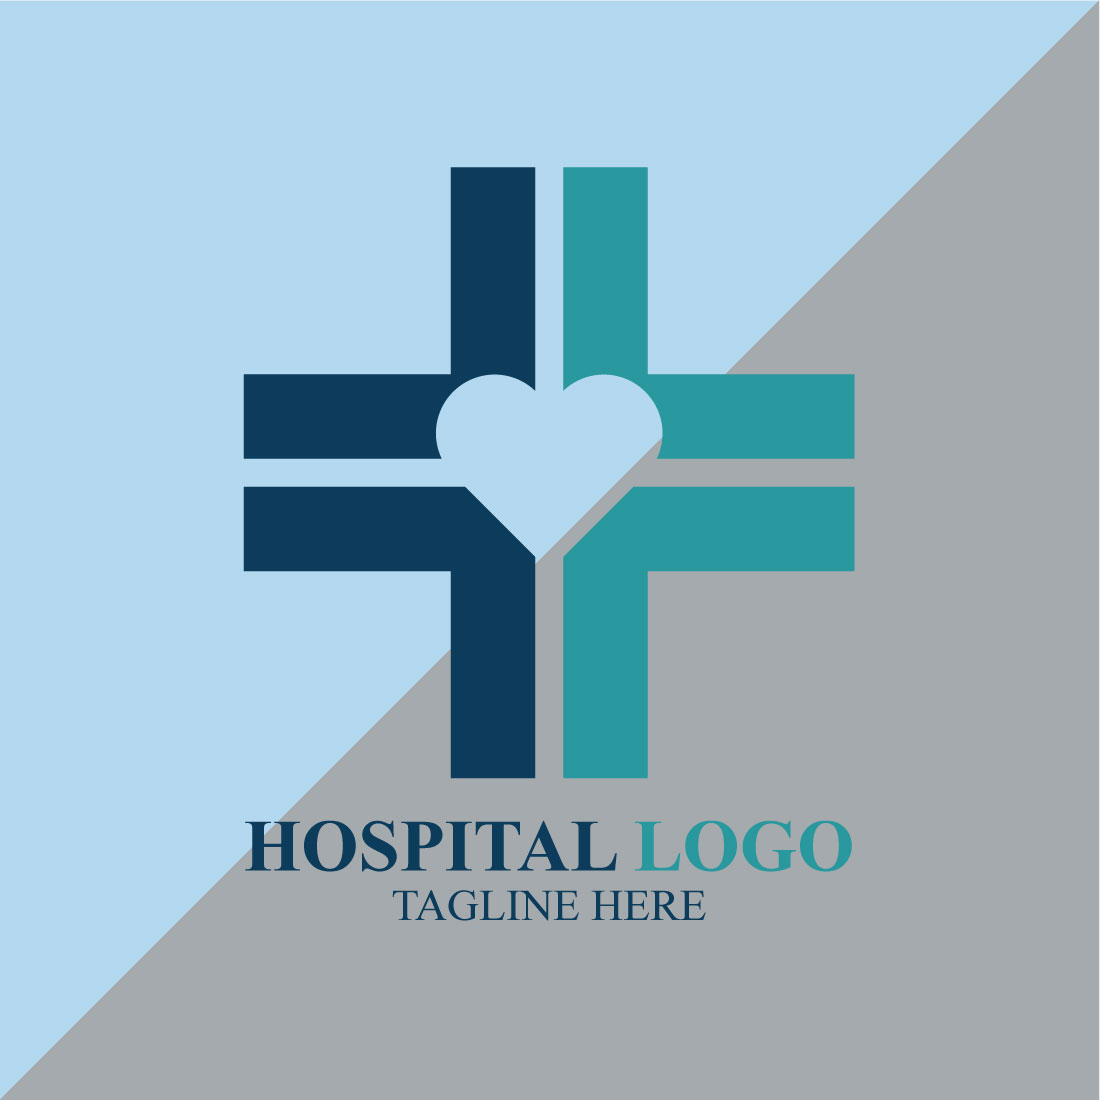 Creative Hospital Logo Design preview image.